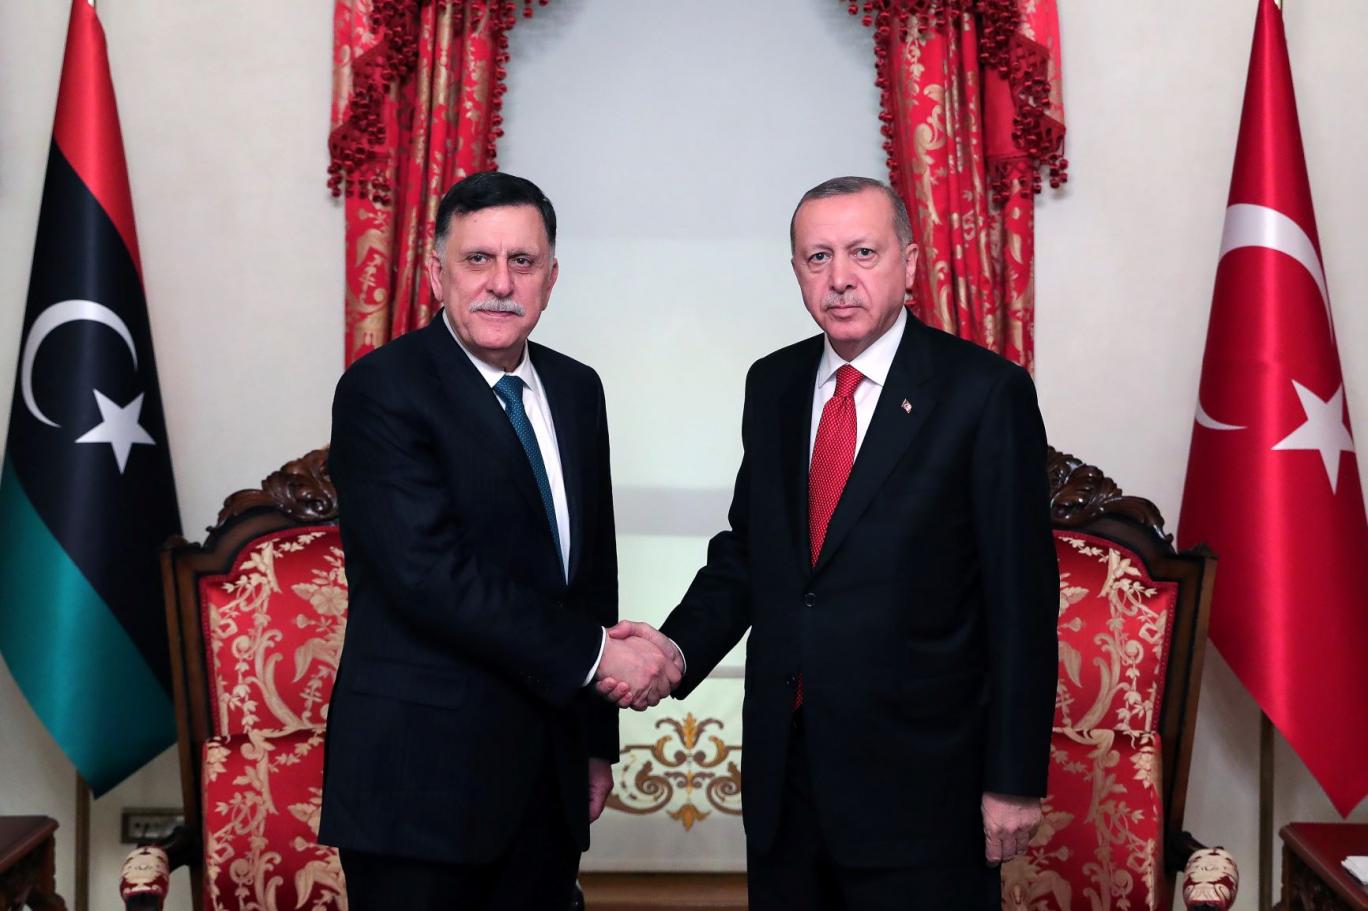 الأمم المتحدة: الاتفاق البحري بين تركيا وليبيا متعلق بالدول الأعضاء